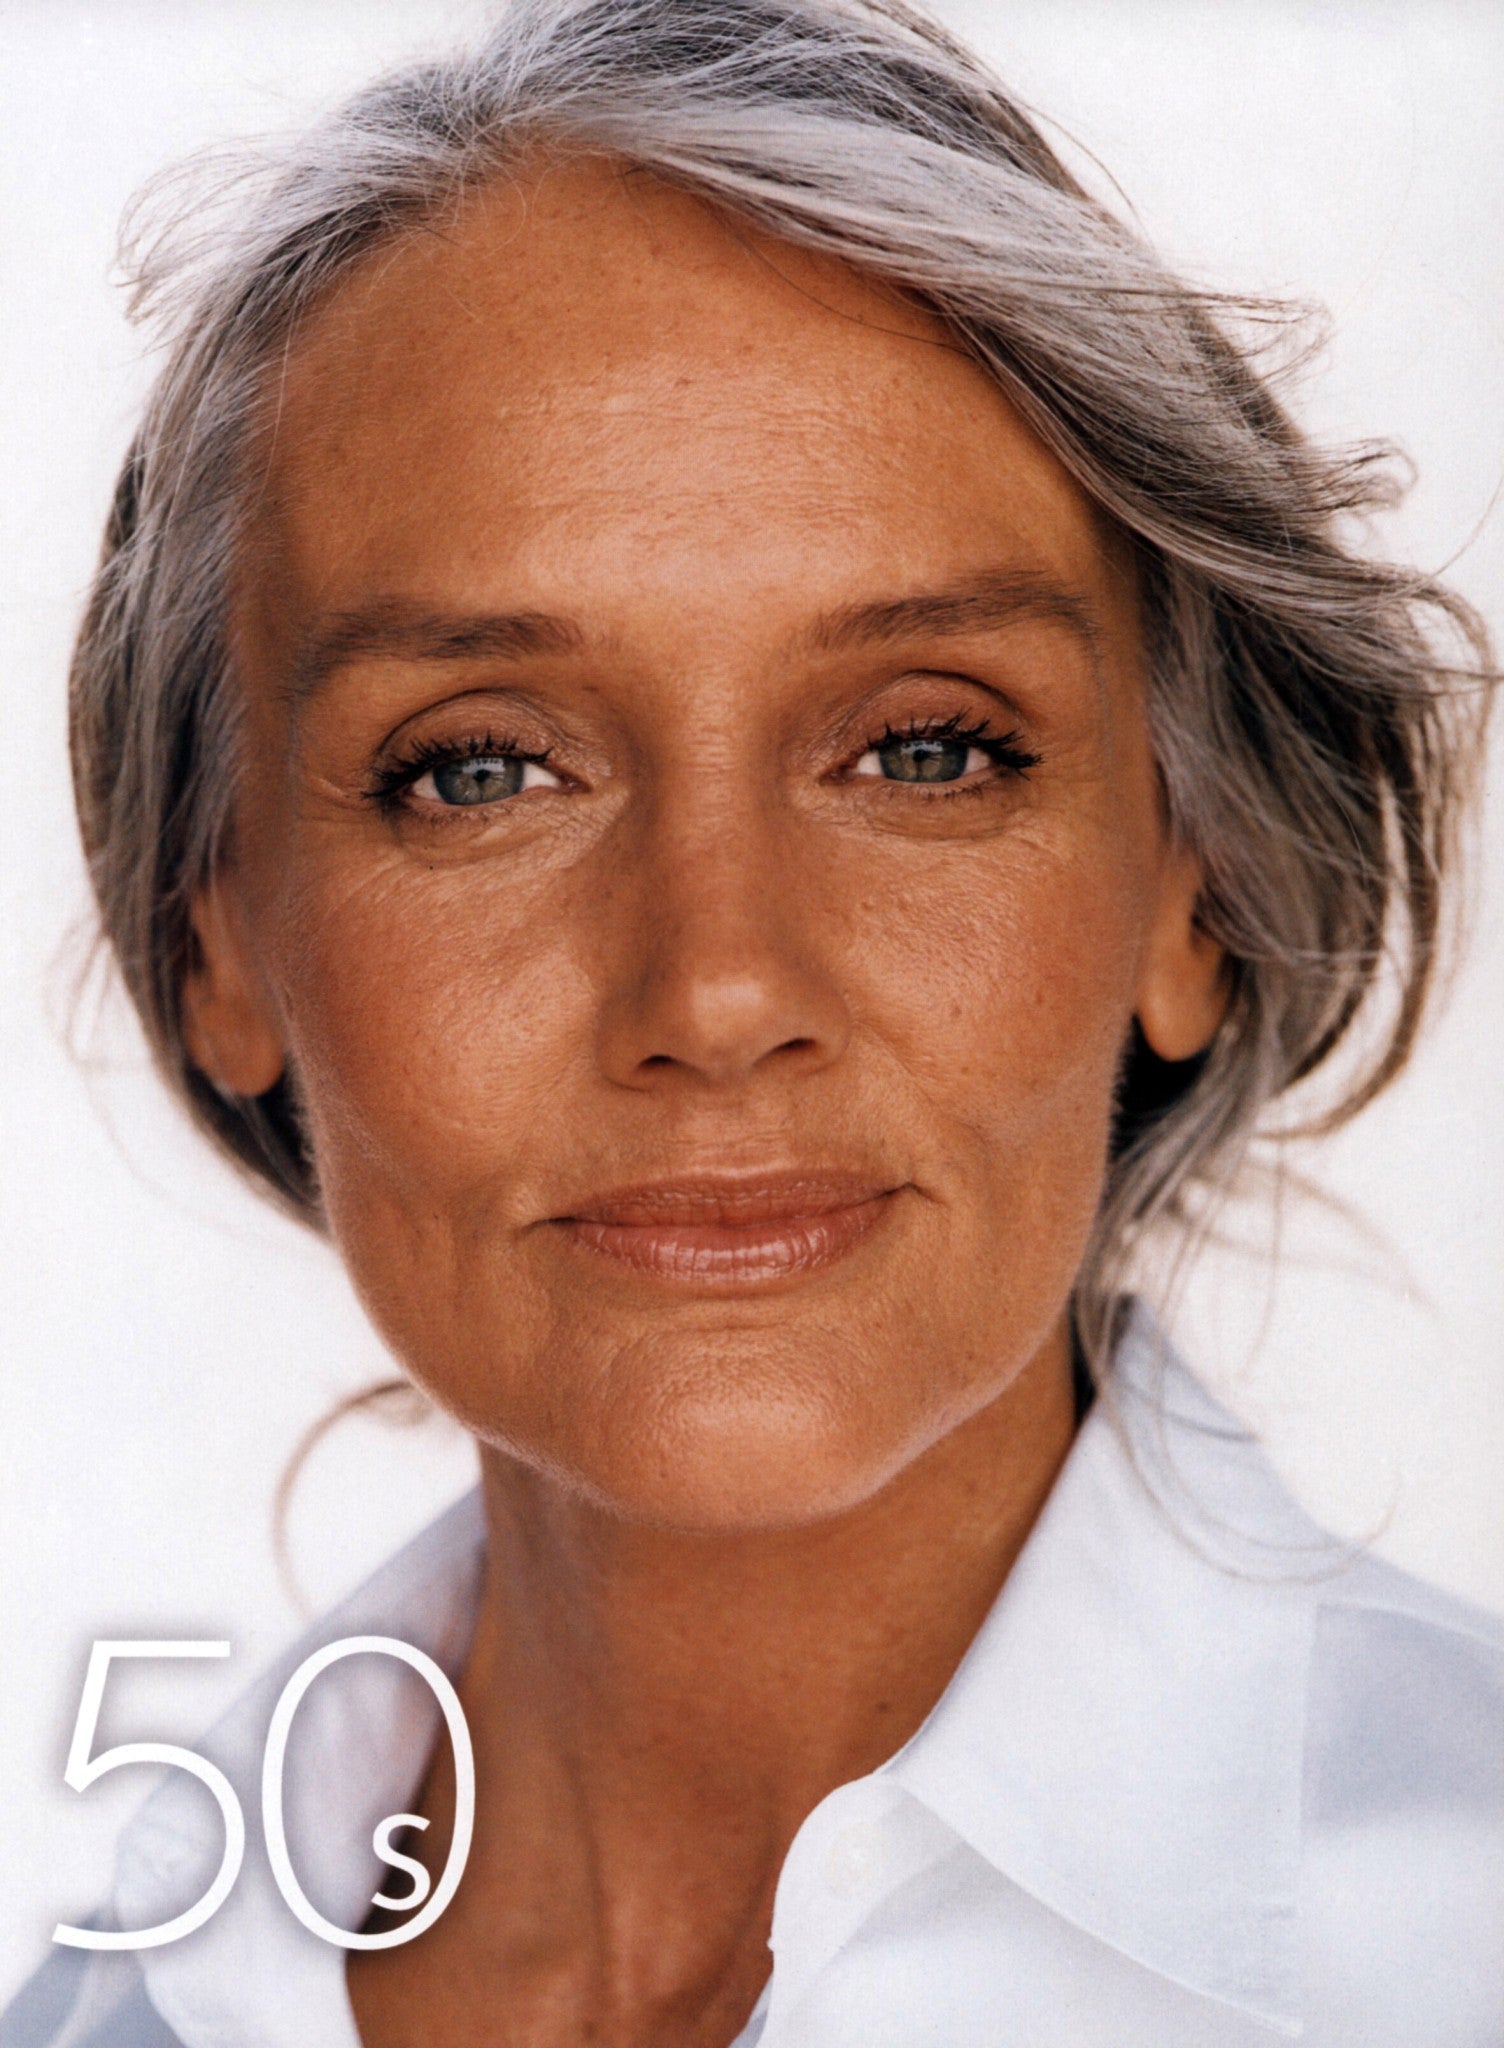 фотографии пятидесятилетних женщин